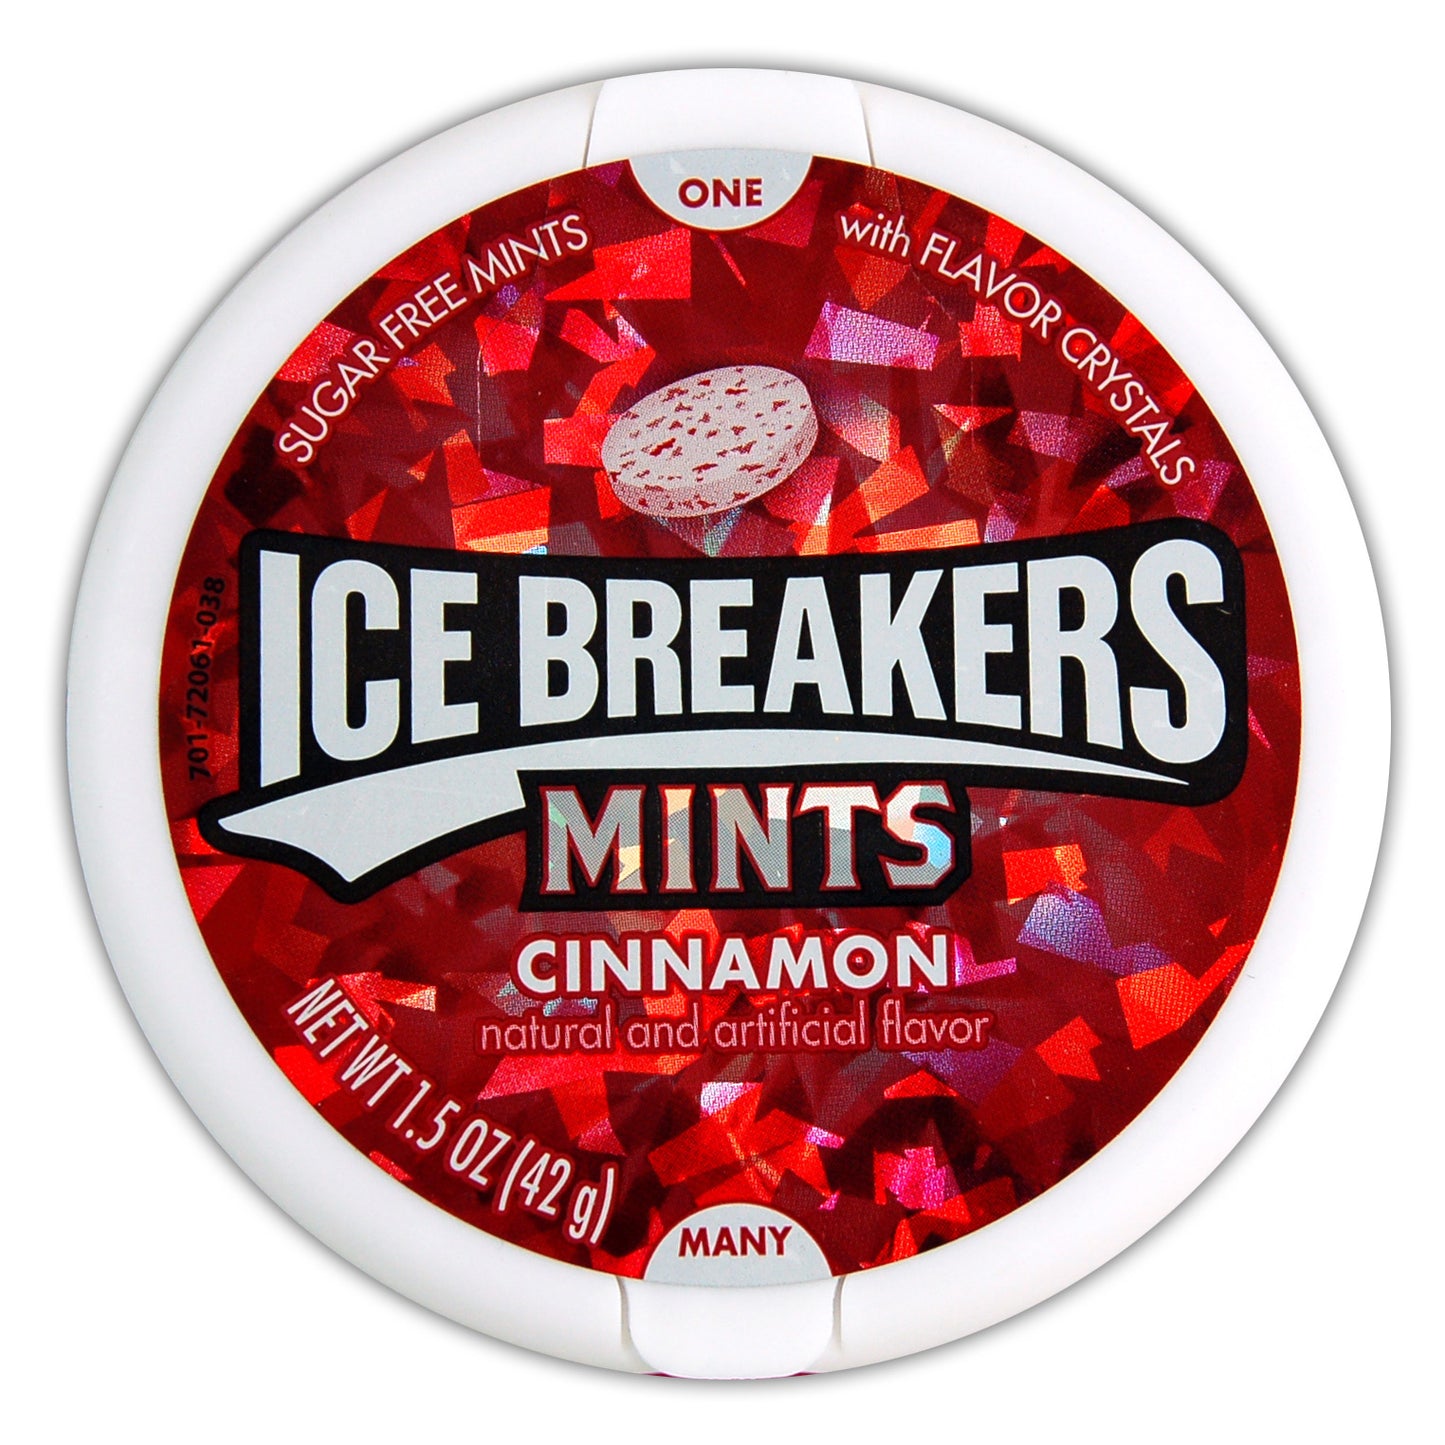 Ice breakers